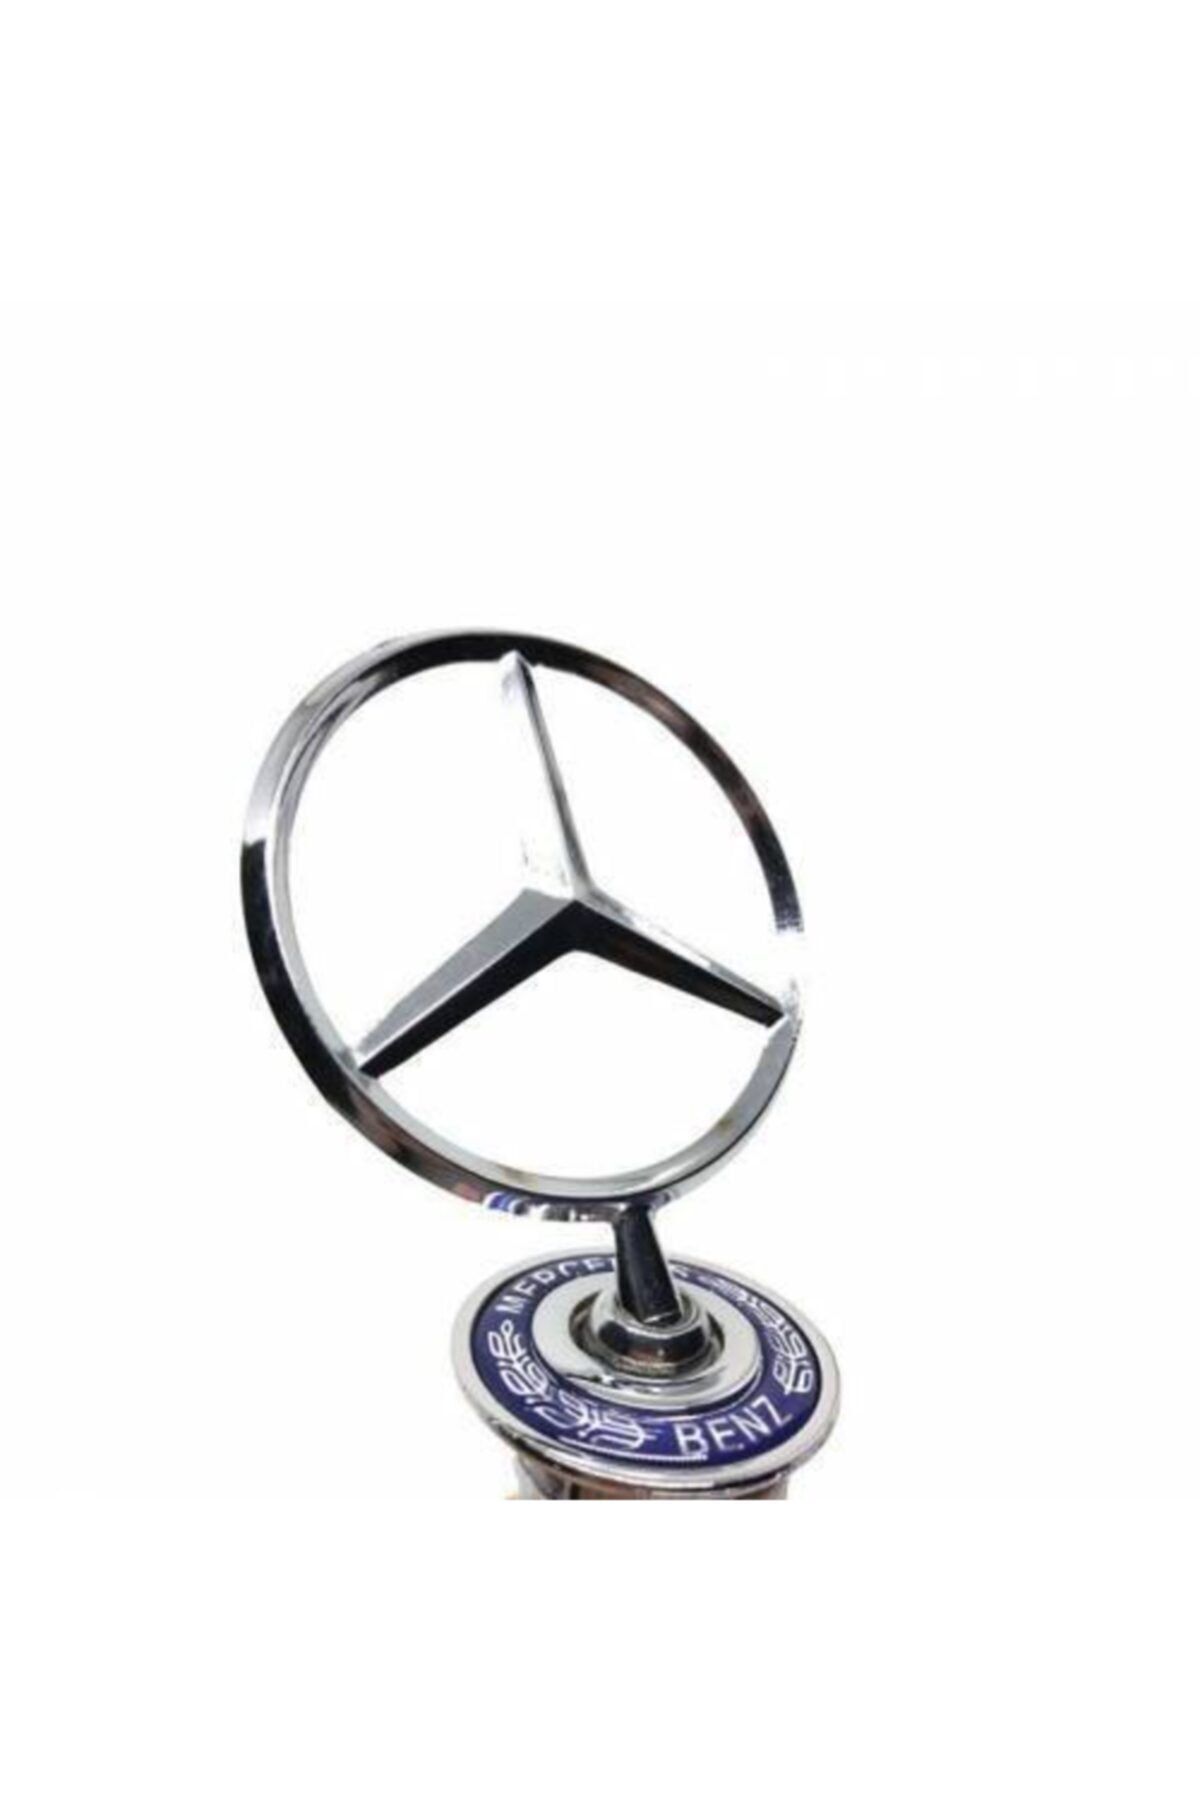 Mercedes Kaput Yıldızı-w204 Kasa-c180-c200-c220-c250-1995-2013 Modele Kadar